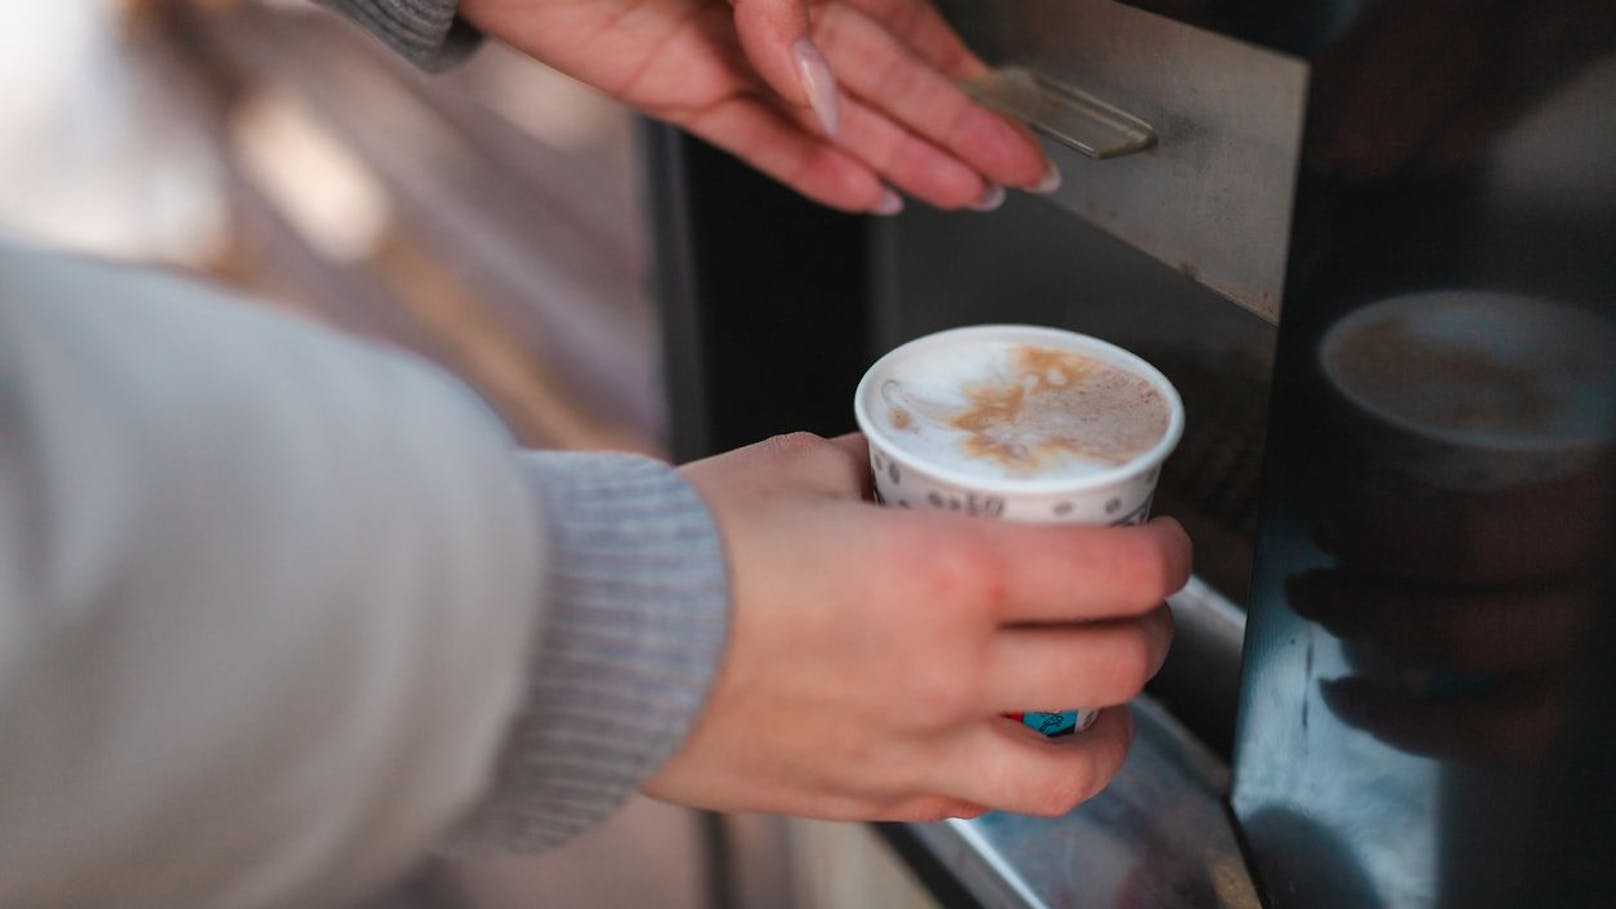 Kaffee aus dem Automat – dann kämpft Frau um ihr Leben